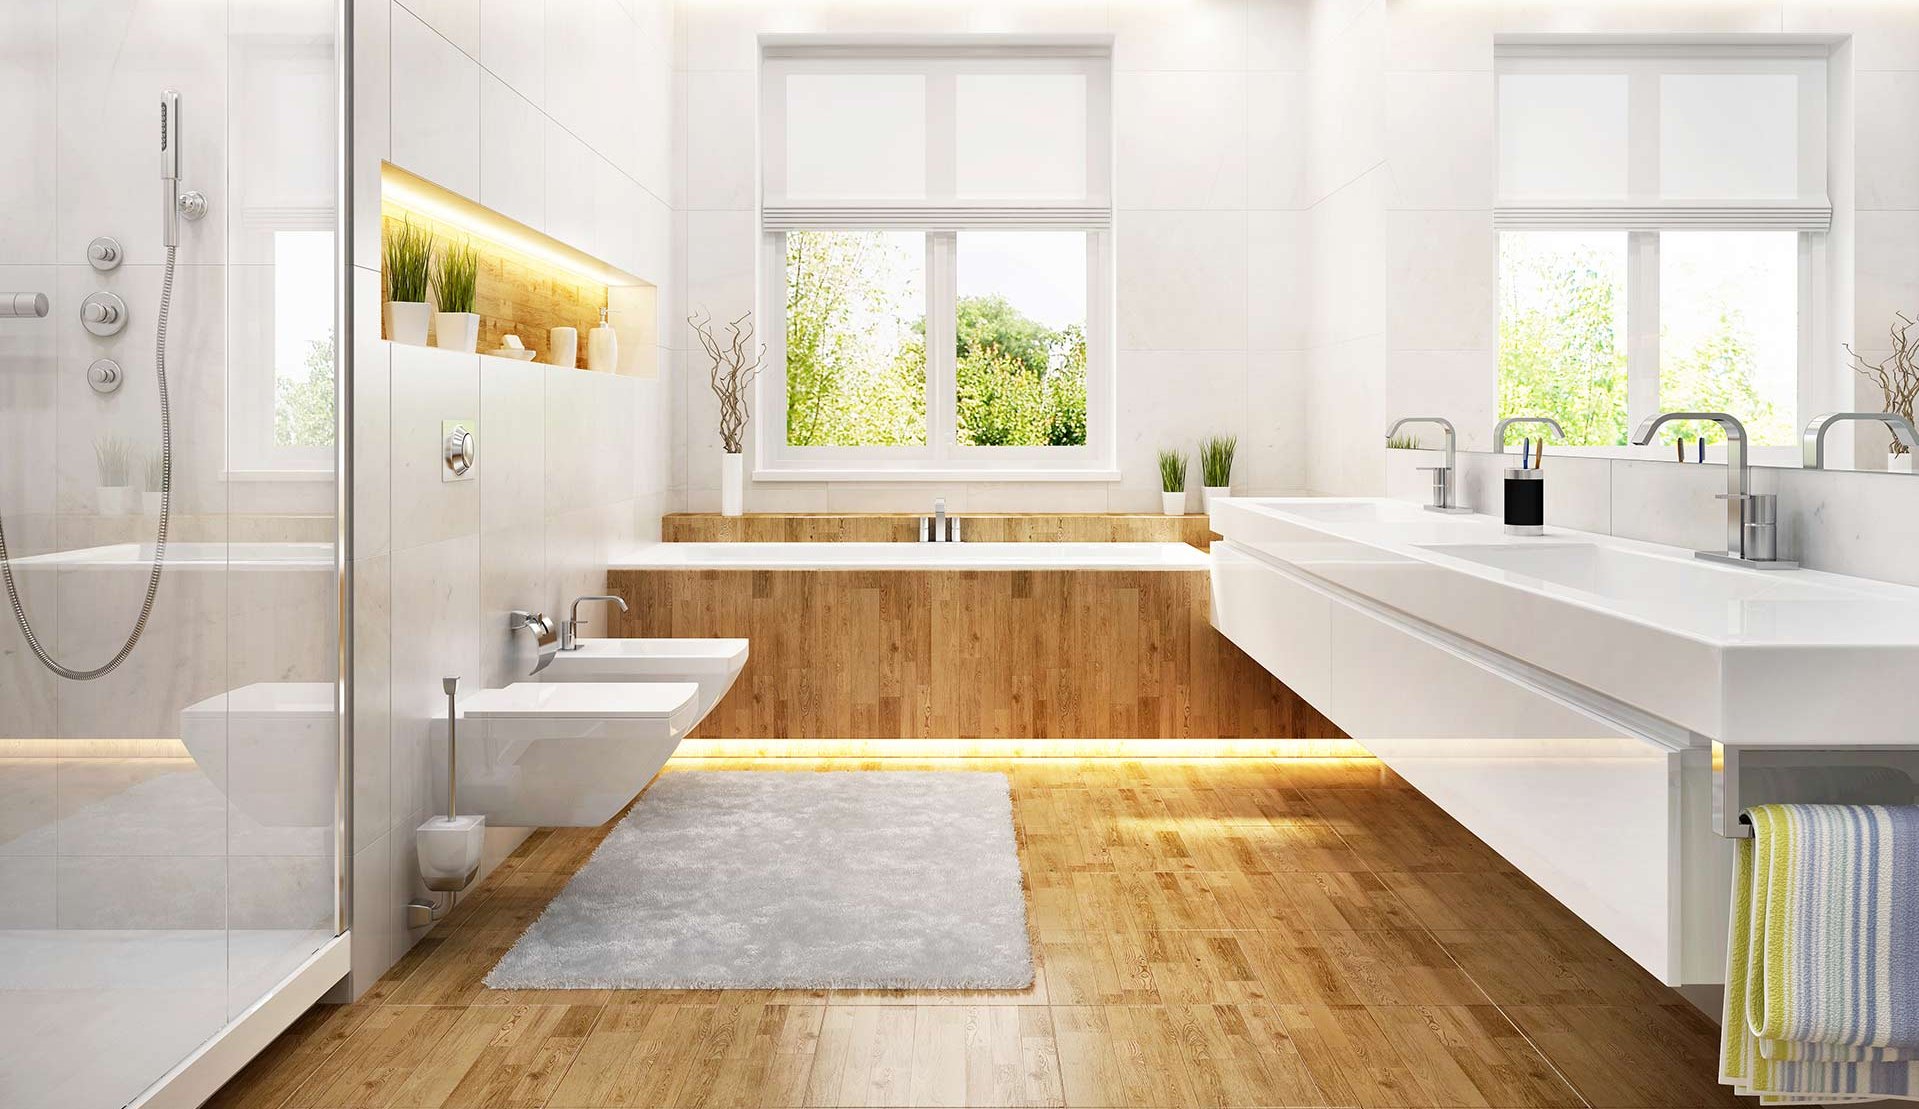 Helles, modernes Badezimmer mit Holzboden und freistehender Badewanne mit Blick auf einen grünen Garten.